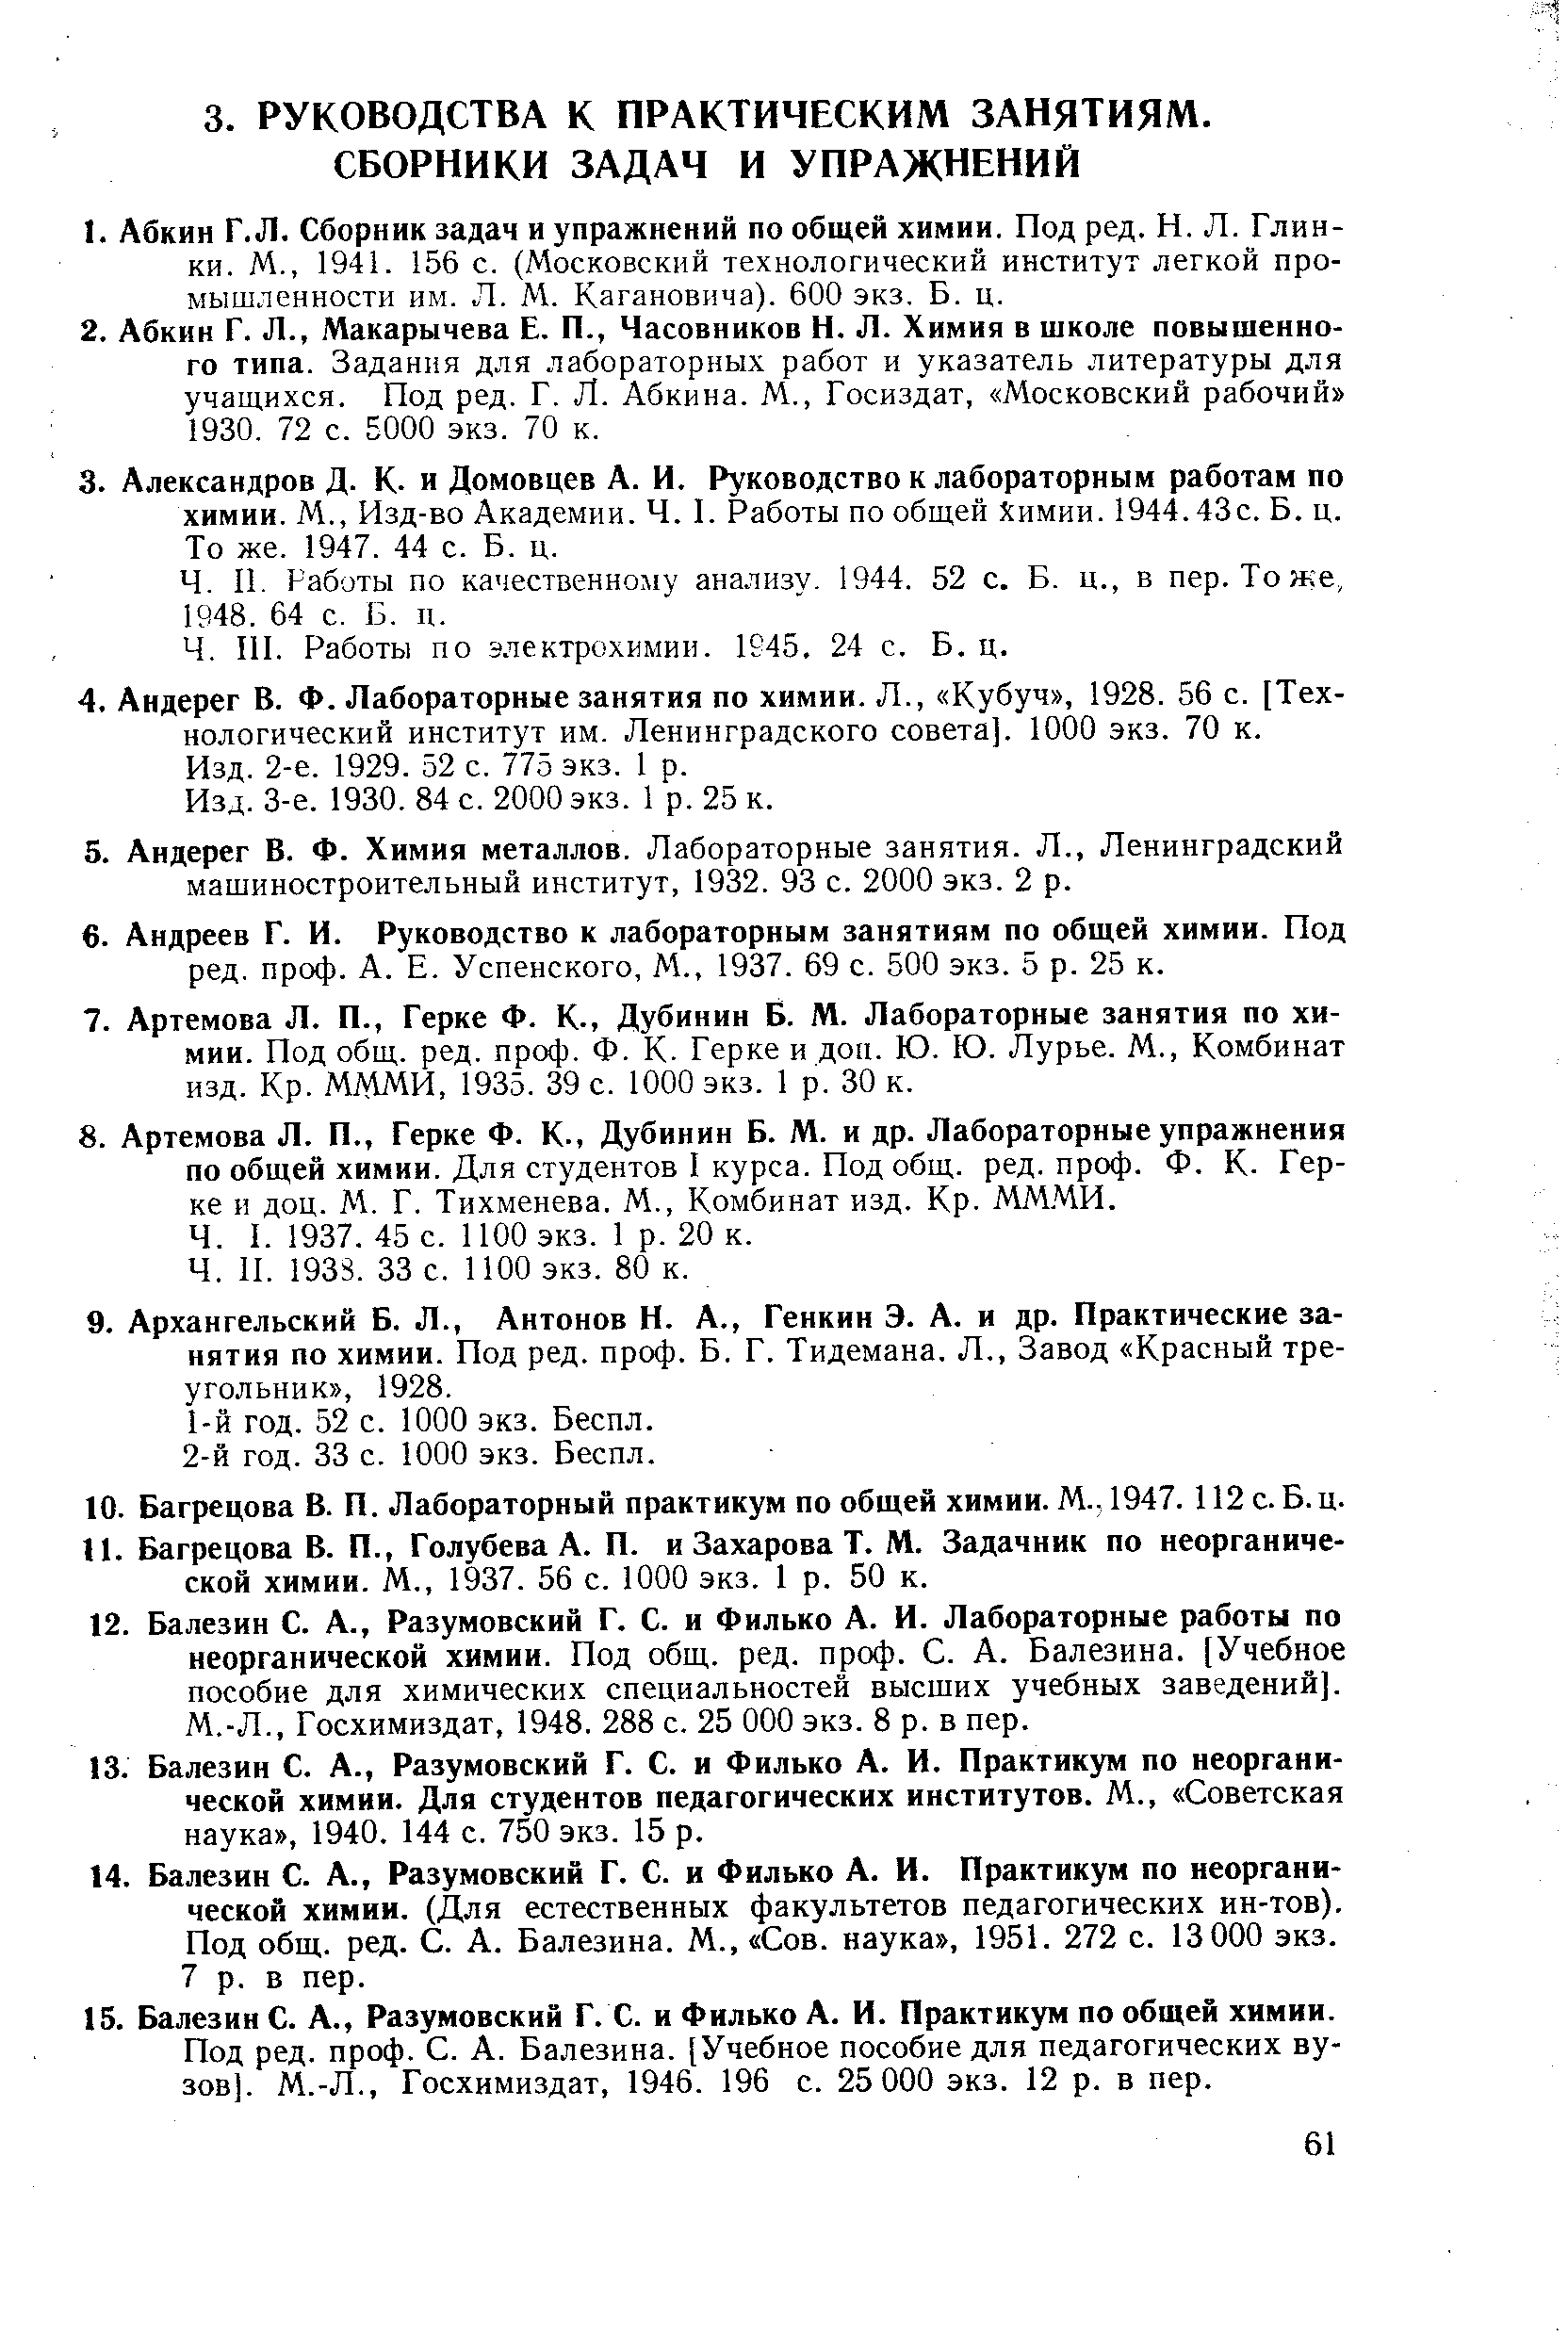 Работы по электрохимии. 1945. 24 с. Б. ц.